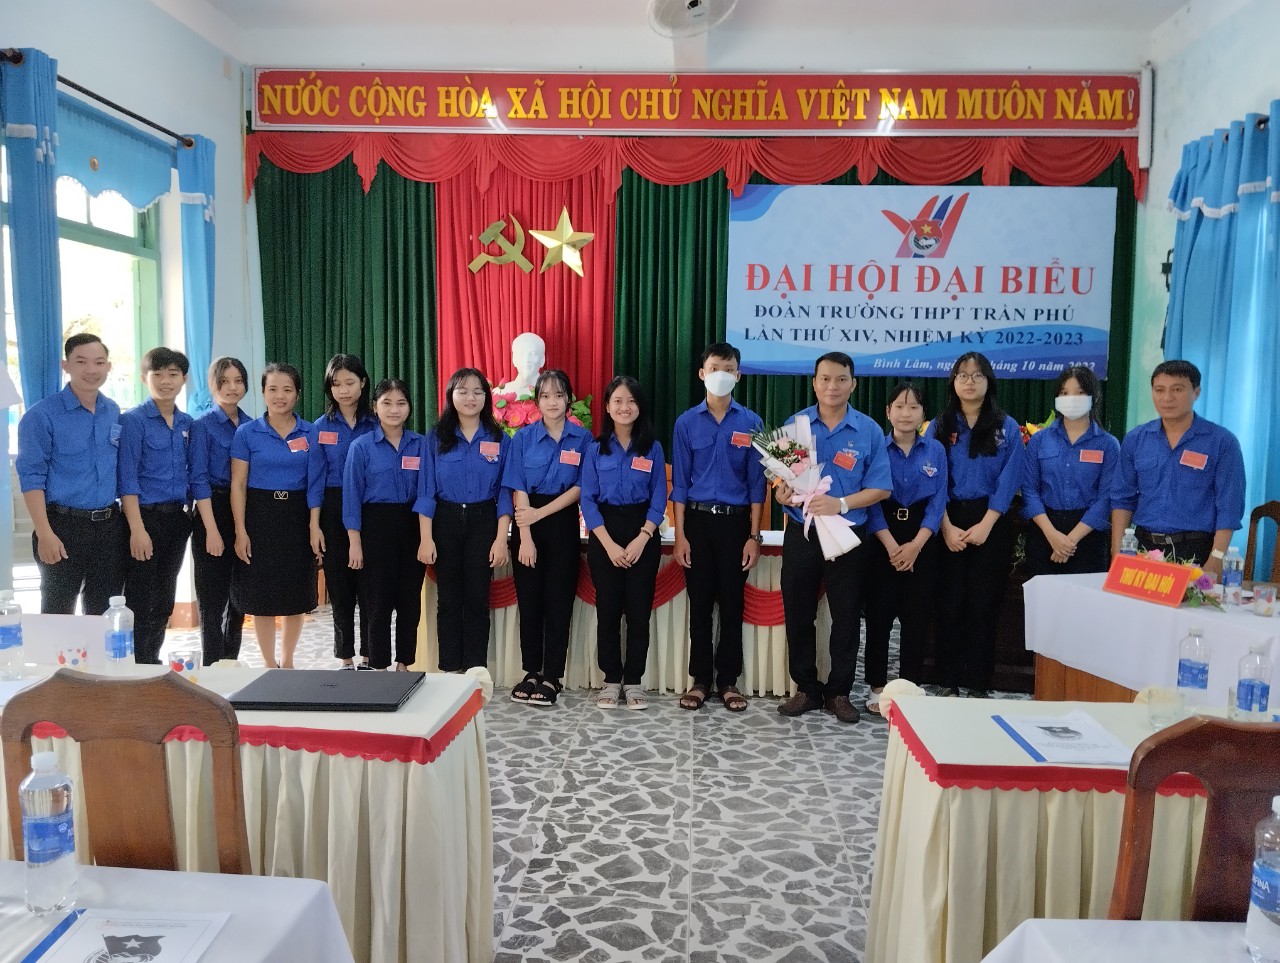 Đại hội Đại biểu Đoàn TNCS Hồ Chí Minh trường THPT Trần Phú lần thứ XIV thành công tốt đẹp